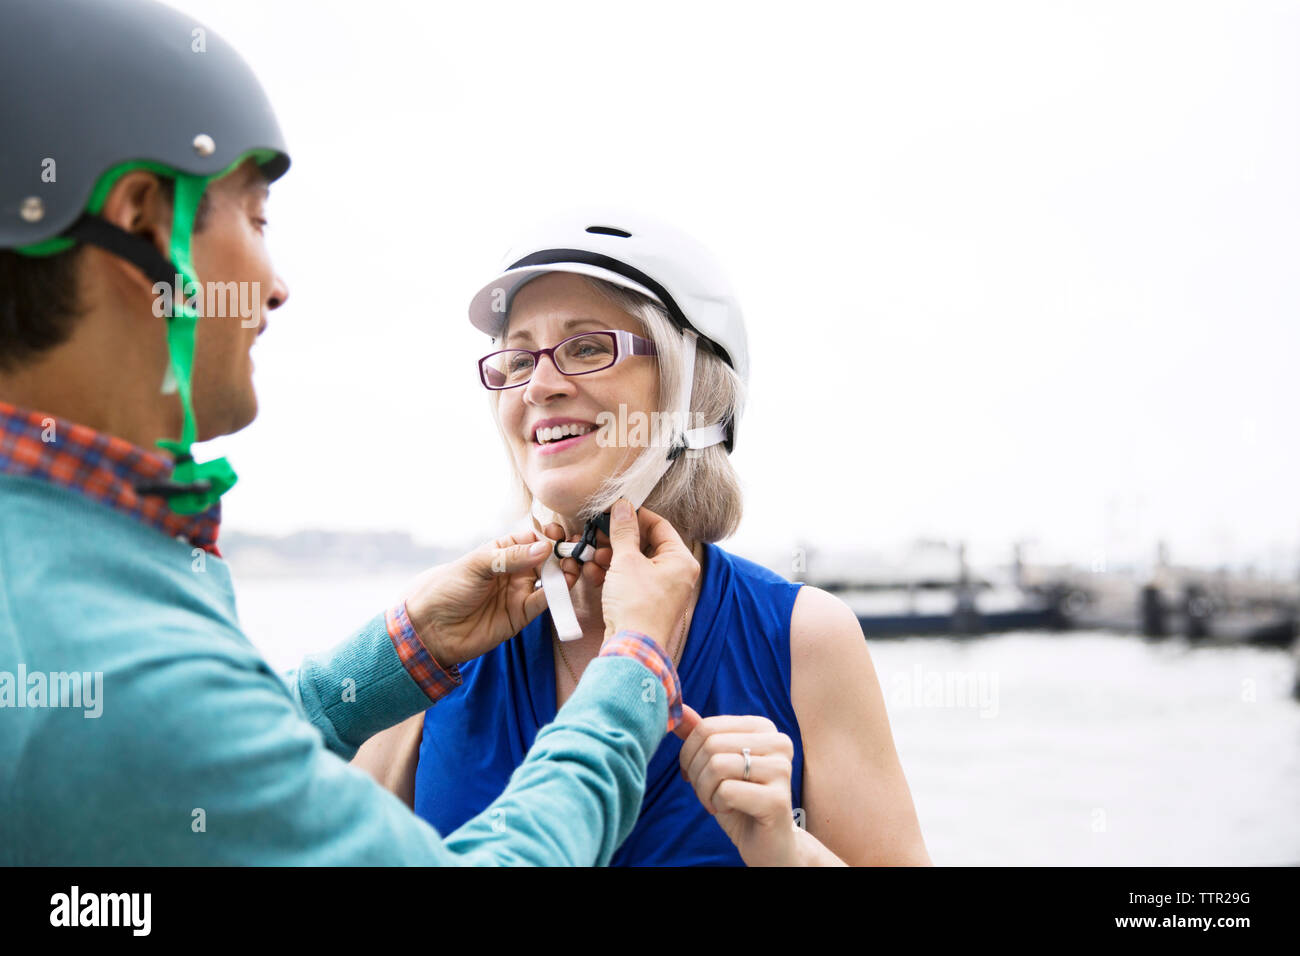 Man assisting woman dans le port de casque de vélo contre le ciel clair Banque D'Images